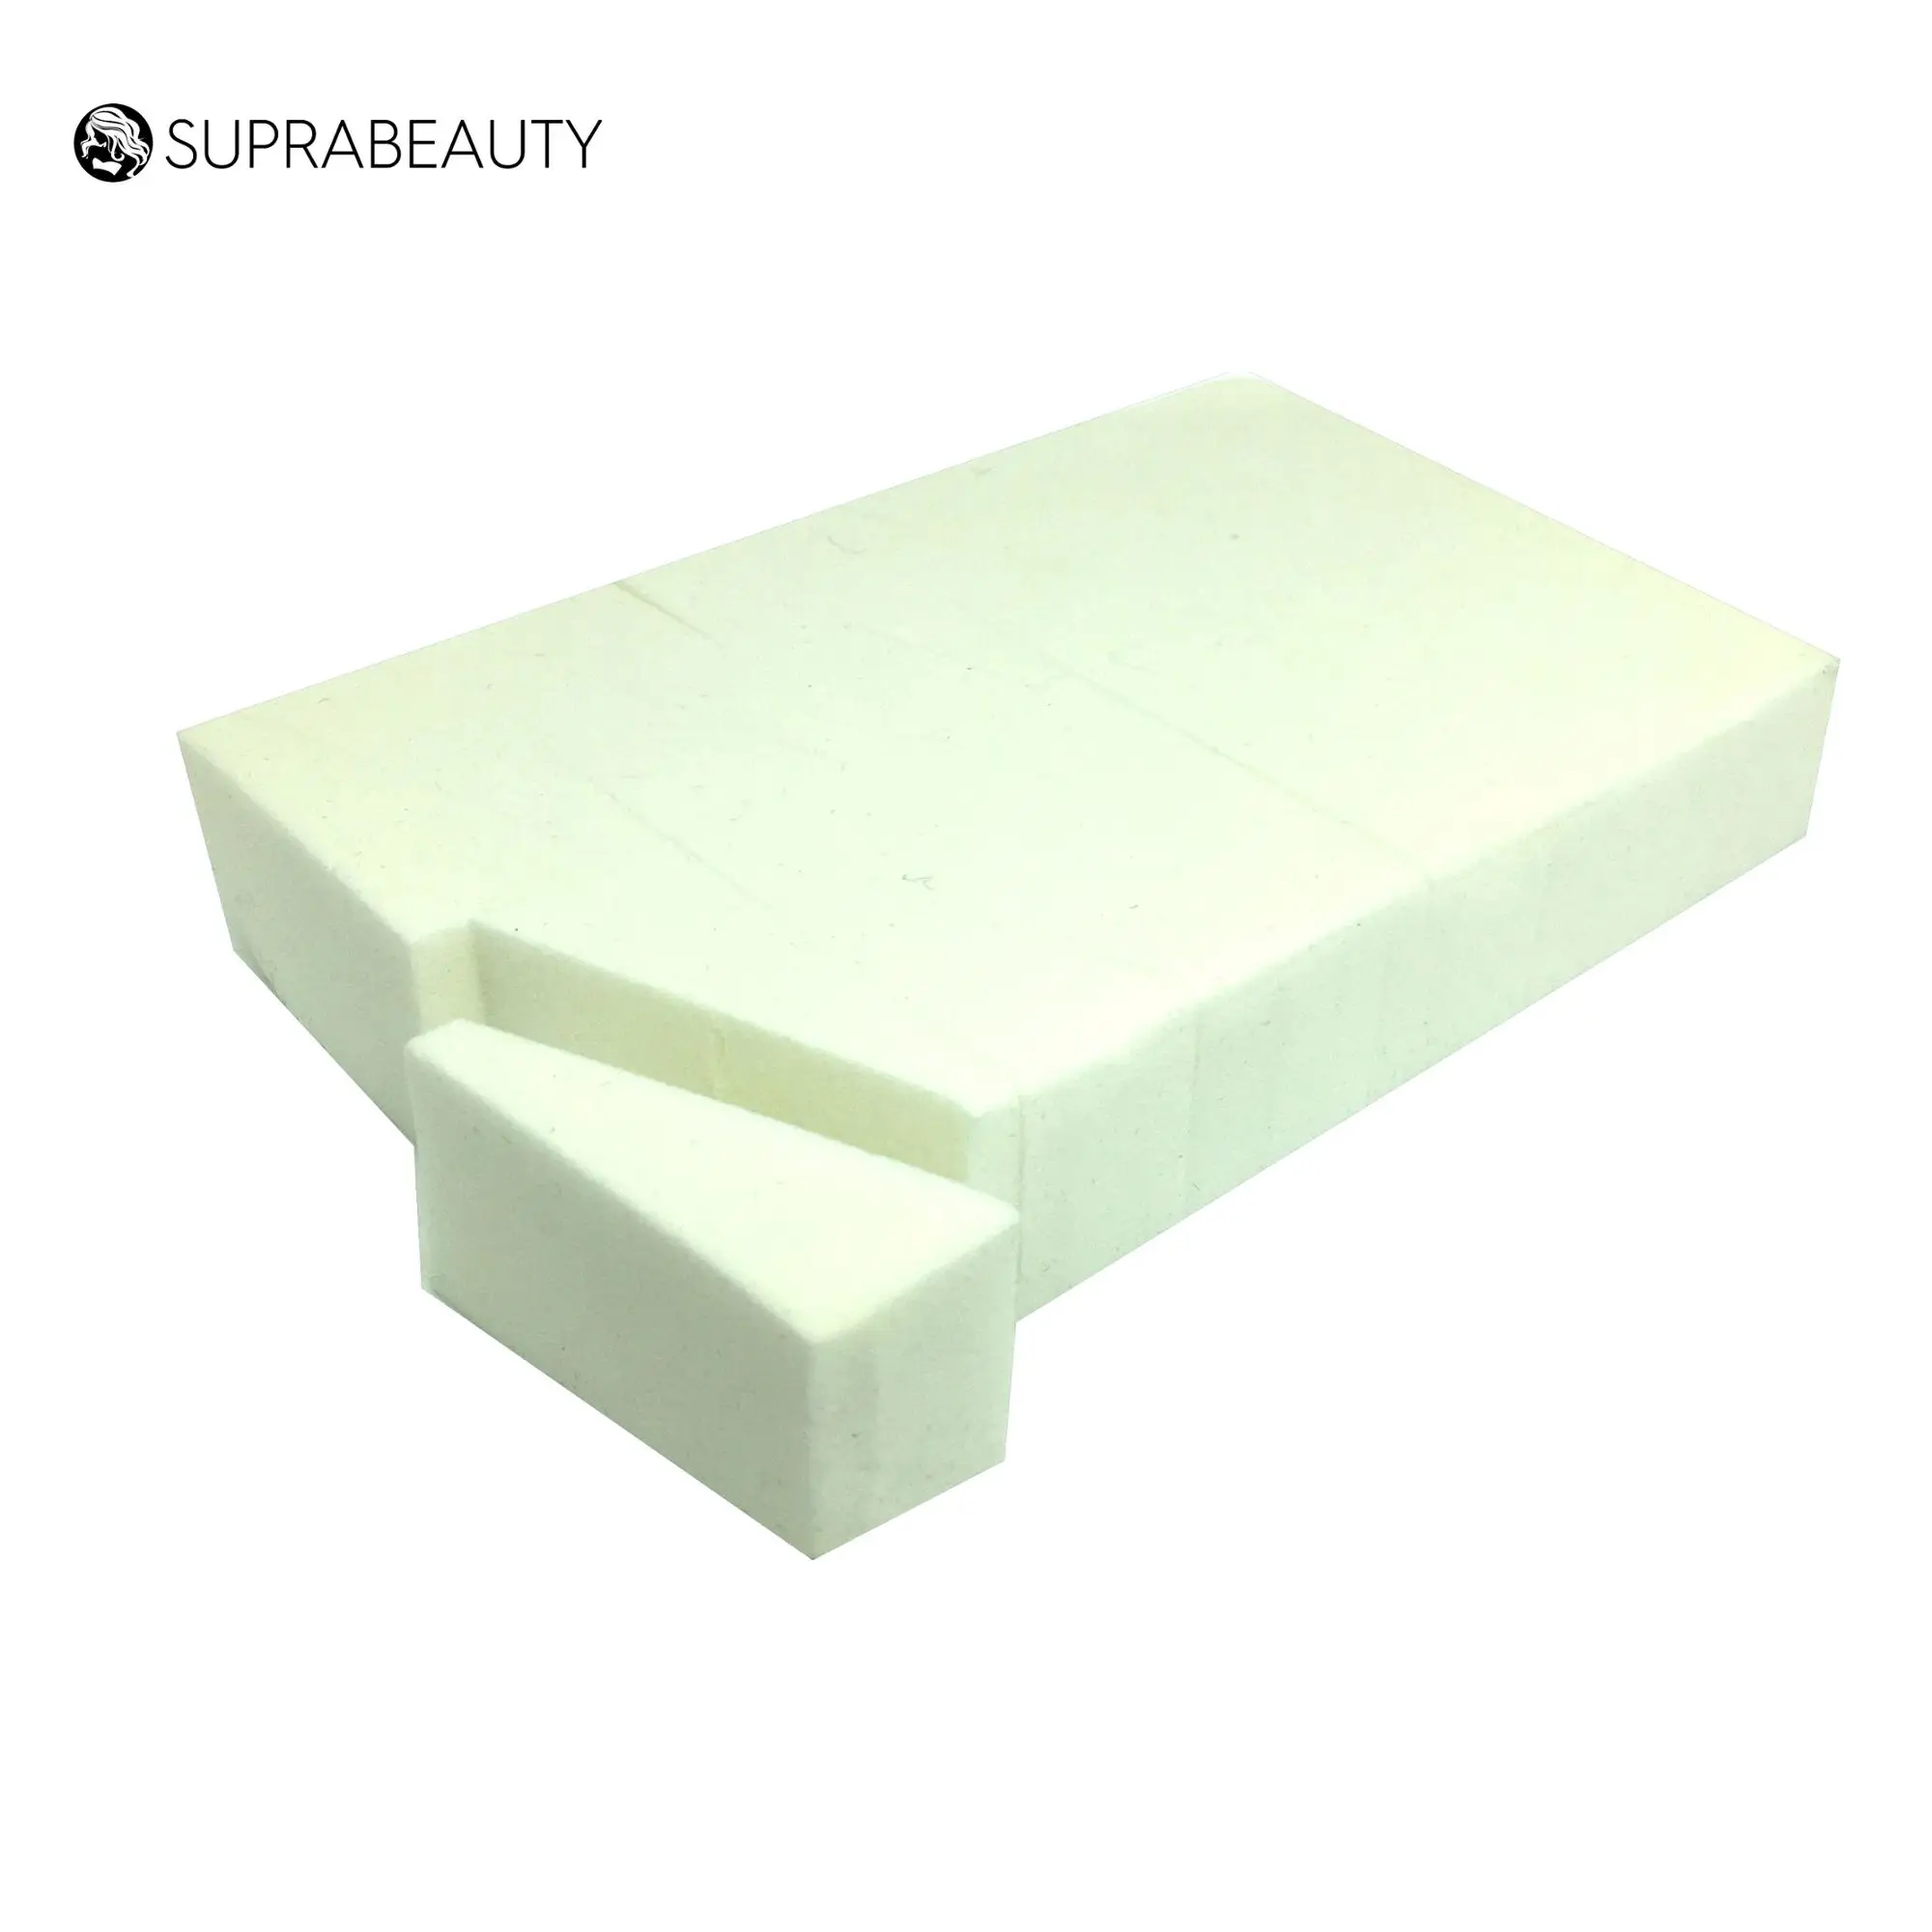 24pcs customized color cosmetic sponge bulk disposable makeup wedges sponge